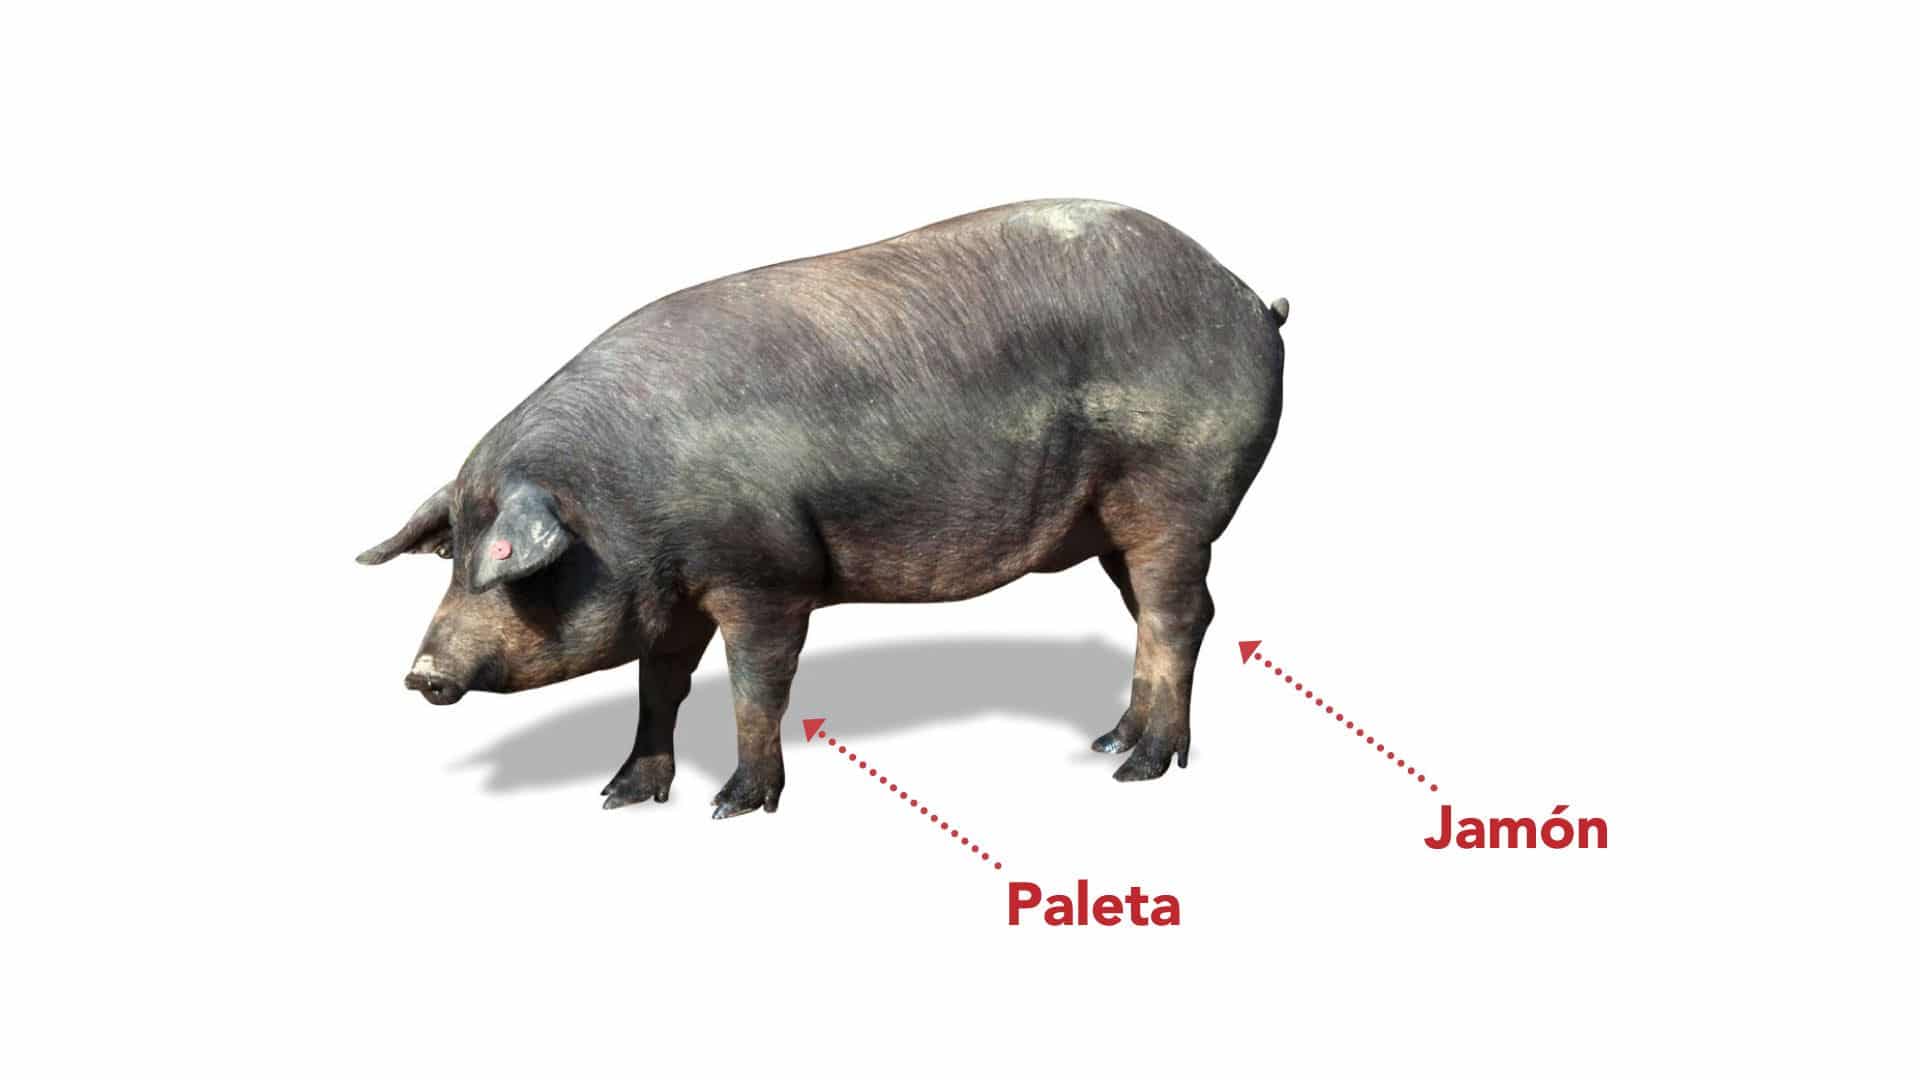 diferencias entre paletaibérica y jamón ibérico